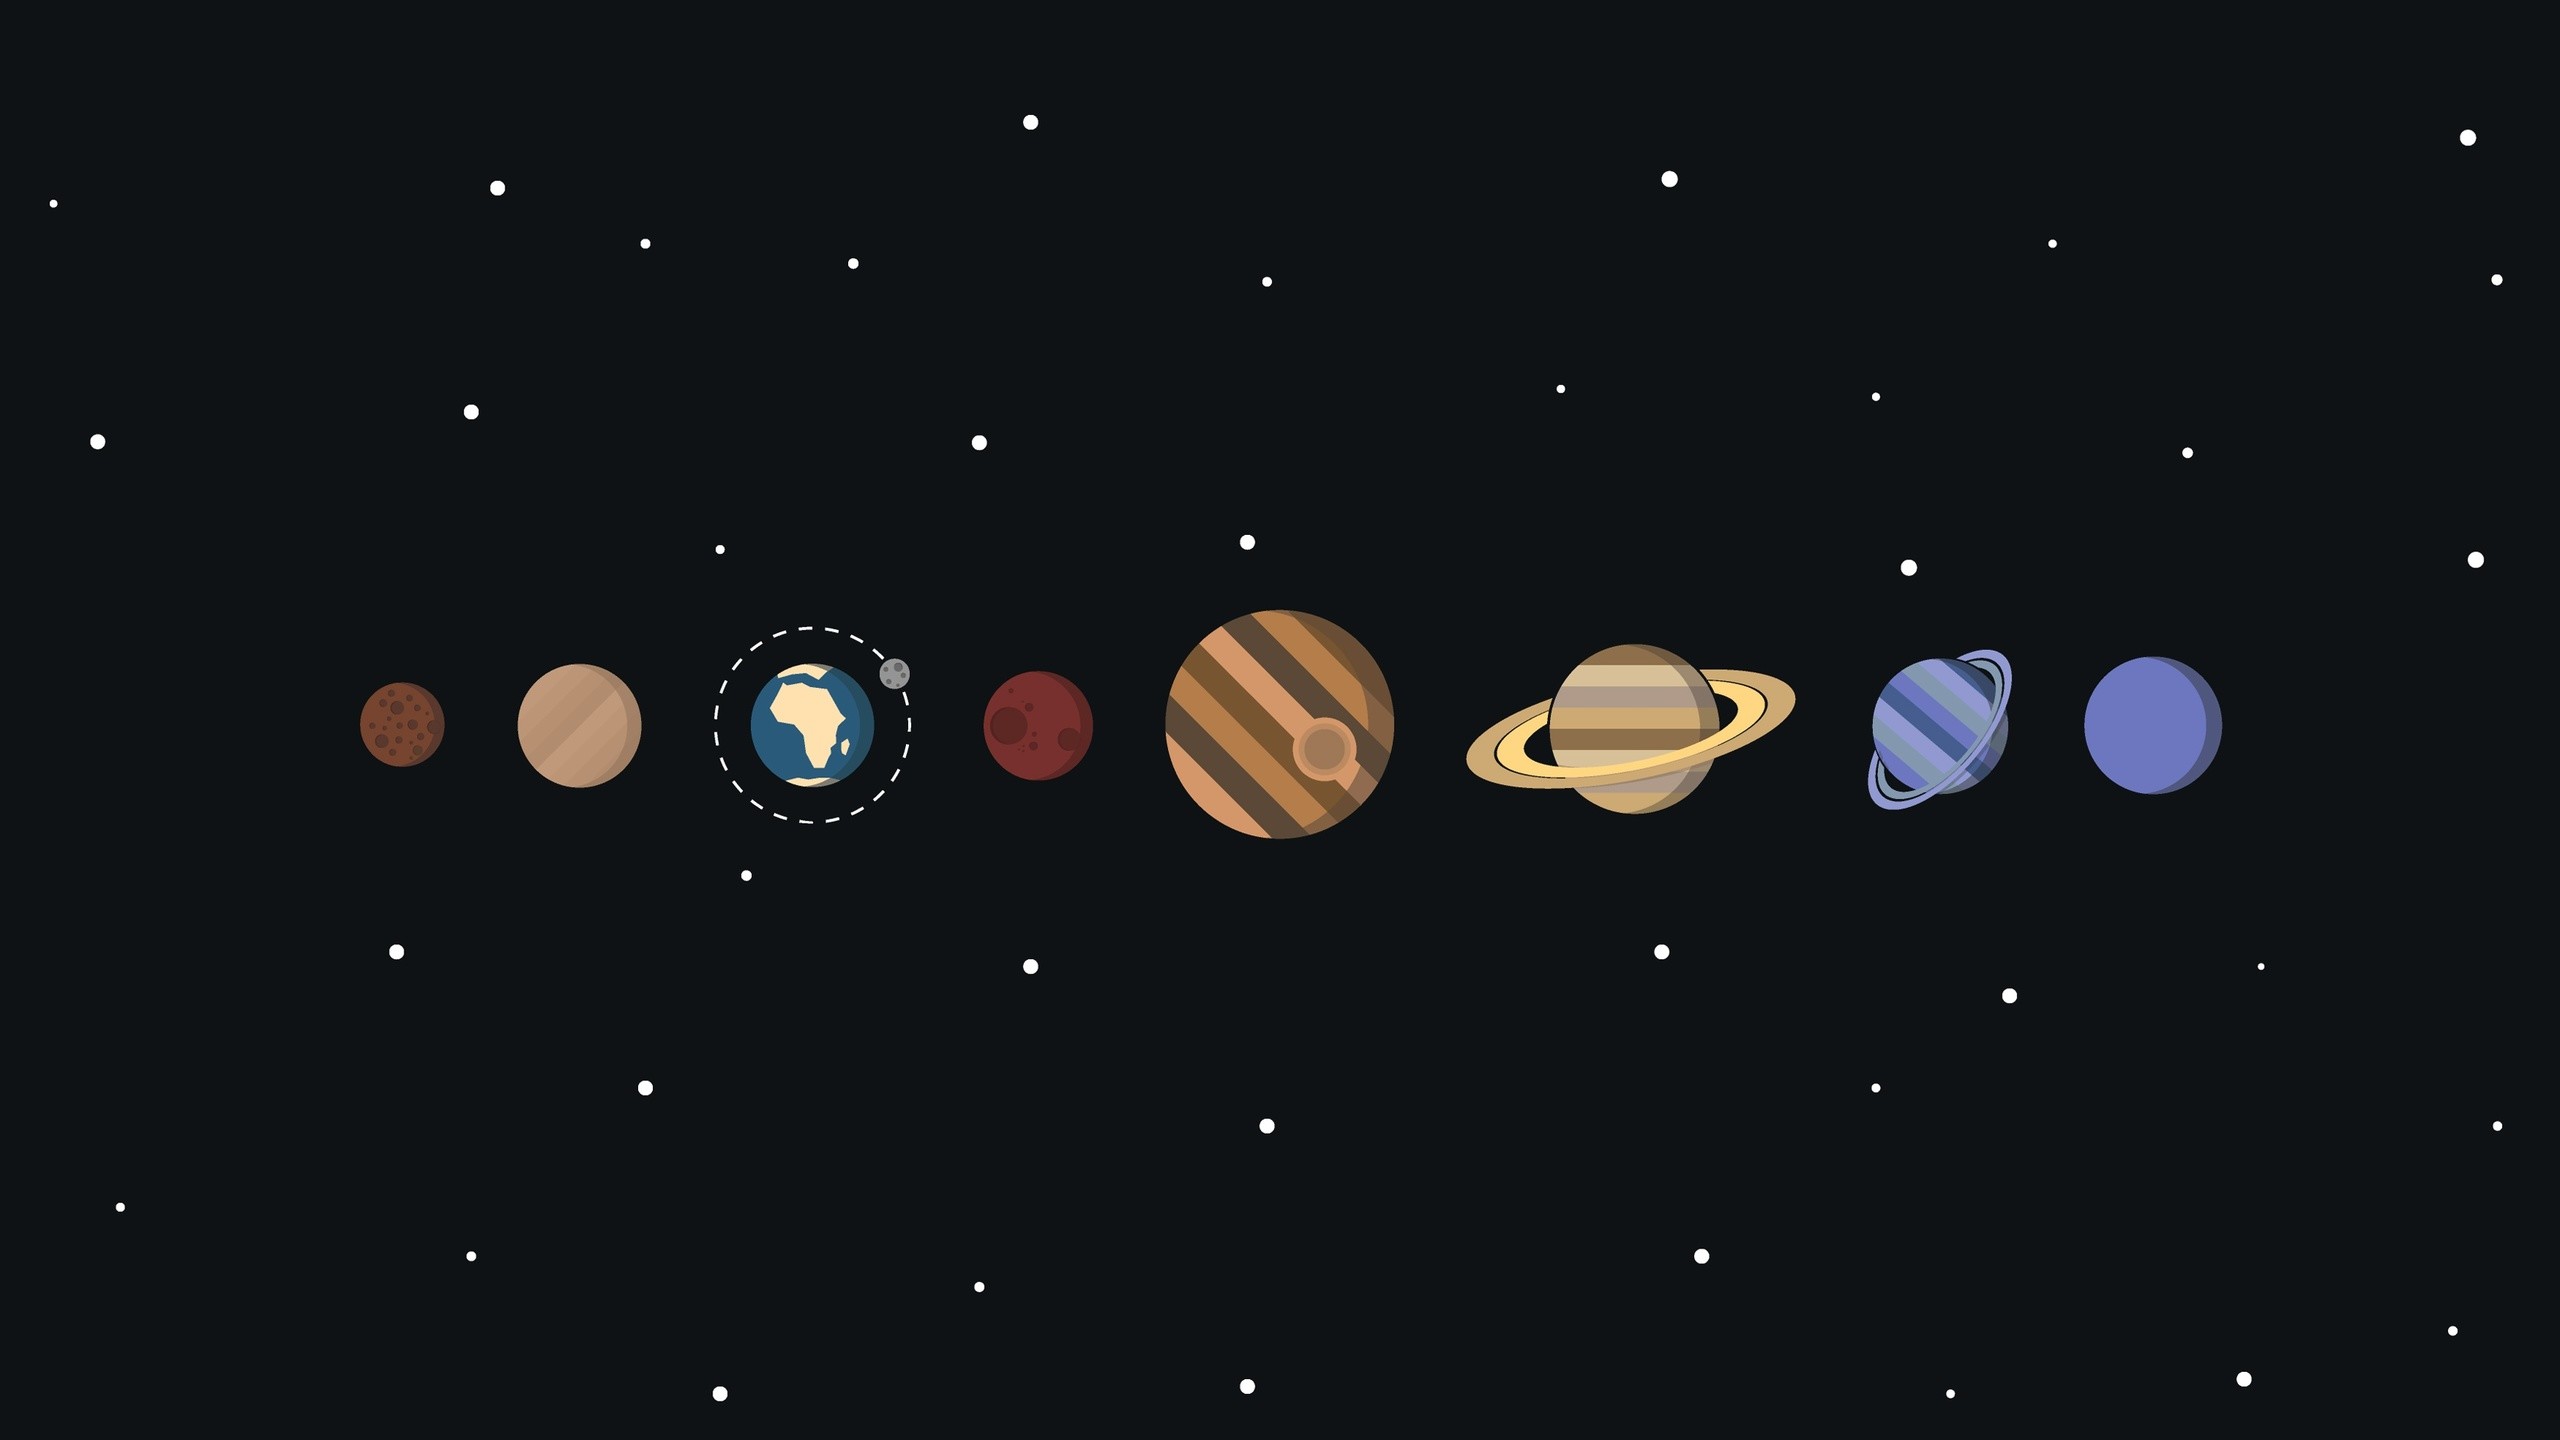 파이어 워치 벽지,행성,하늘,천체,천문학,대기권 밖